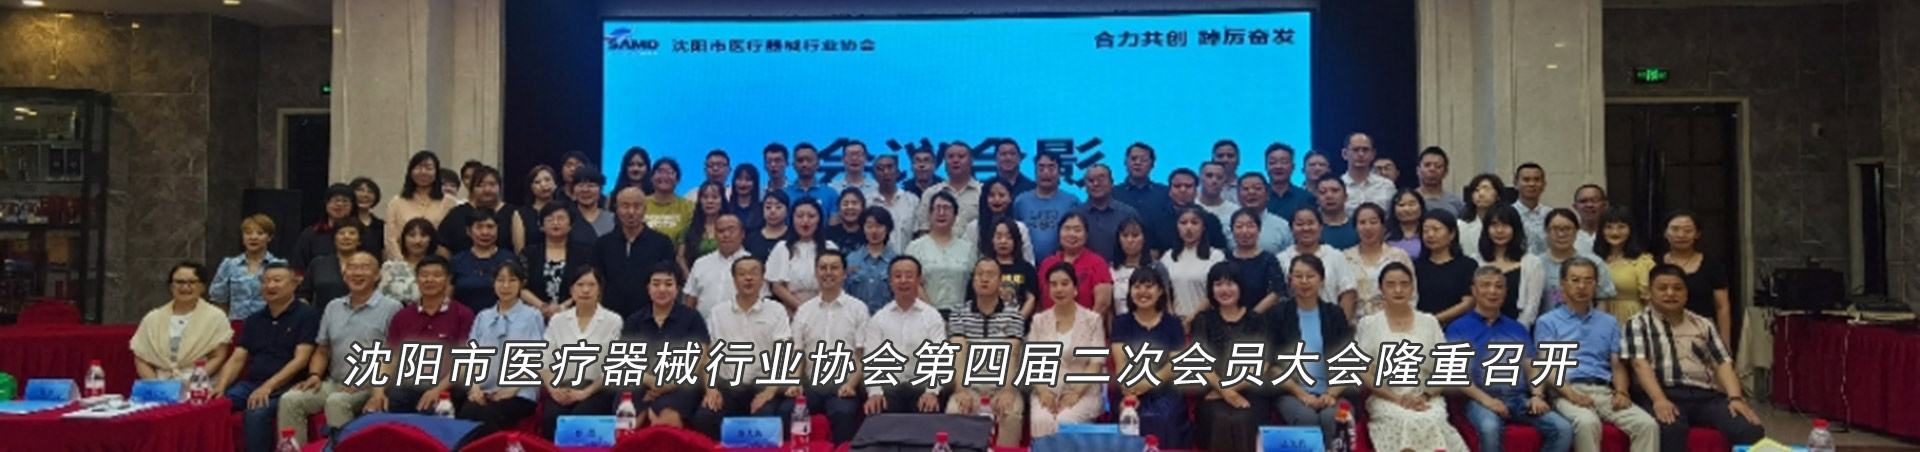 沈阳市医疗器械行业协会第四届二次会员大会隆重召开